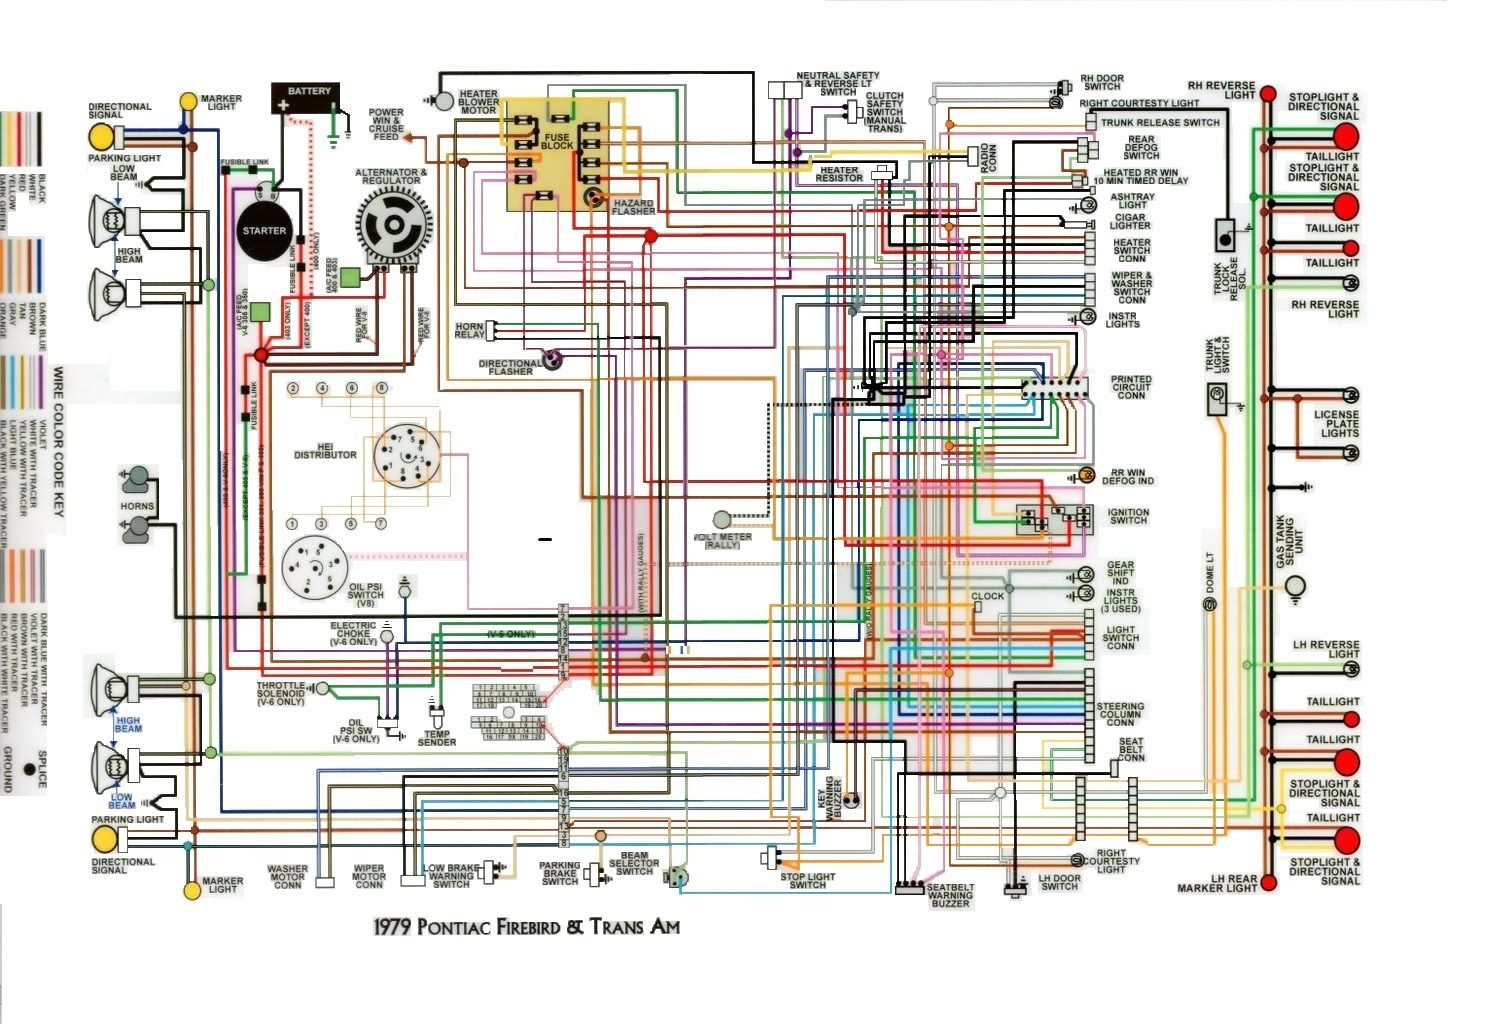 1986 Tran Am Wiring Diagram - Wiring Diagram Schema